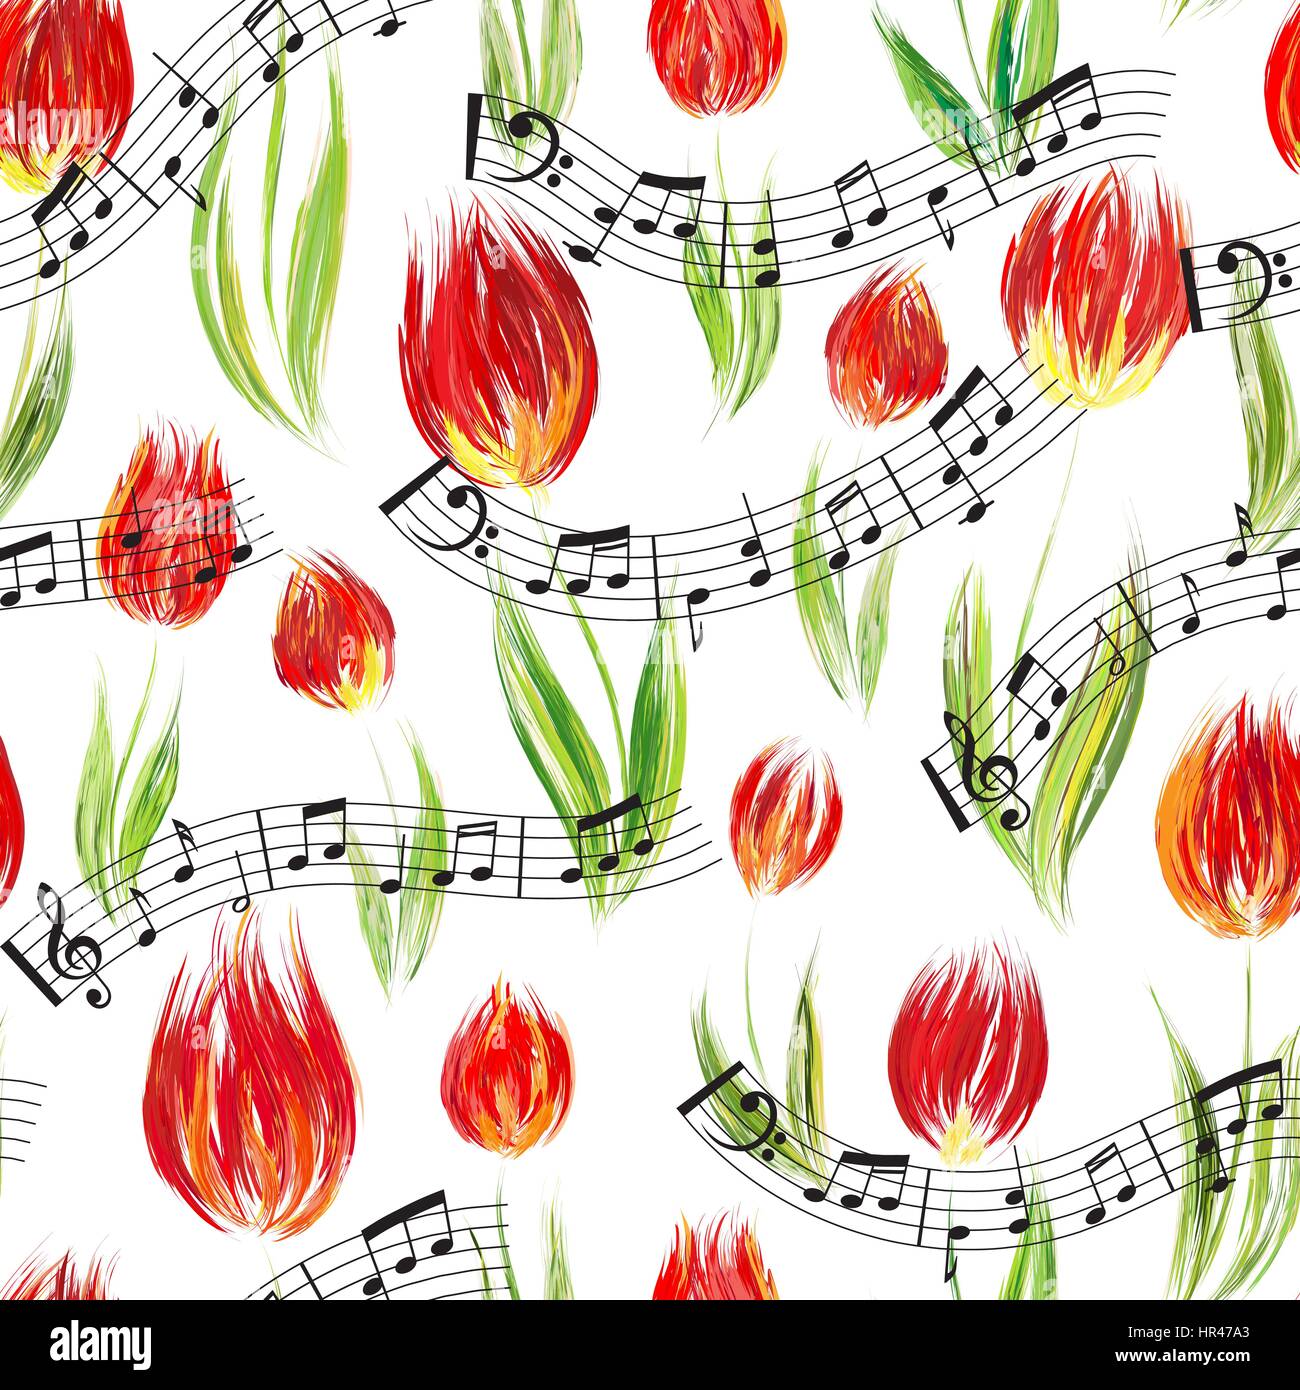 Motif transparent brillant avec de l'huile peinte en rouge fleurs tulipes fin notes, éléments de conception. Motif floral pour les invitations de mariage, cartes de vœux, scrapbo Illustration de Vecteur